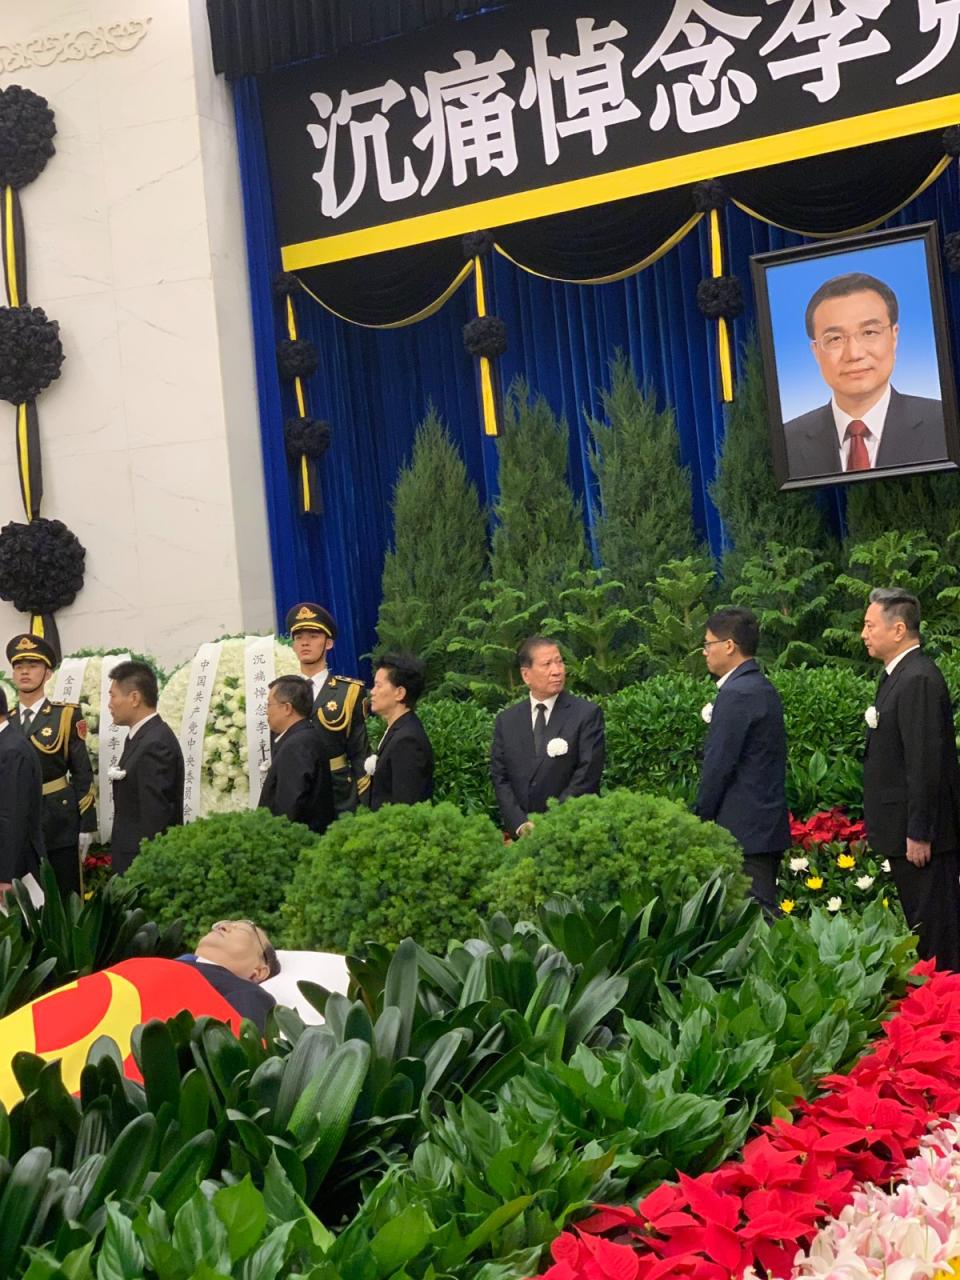 中國前總理李克強遺體告別式11月2日在北京八寶山革命公墓舉行，社群媒體流出現場畫面。X平台